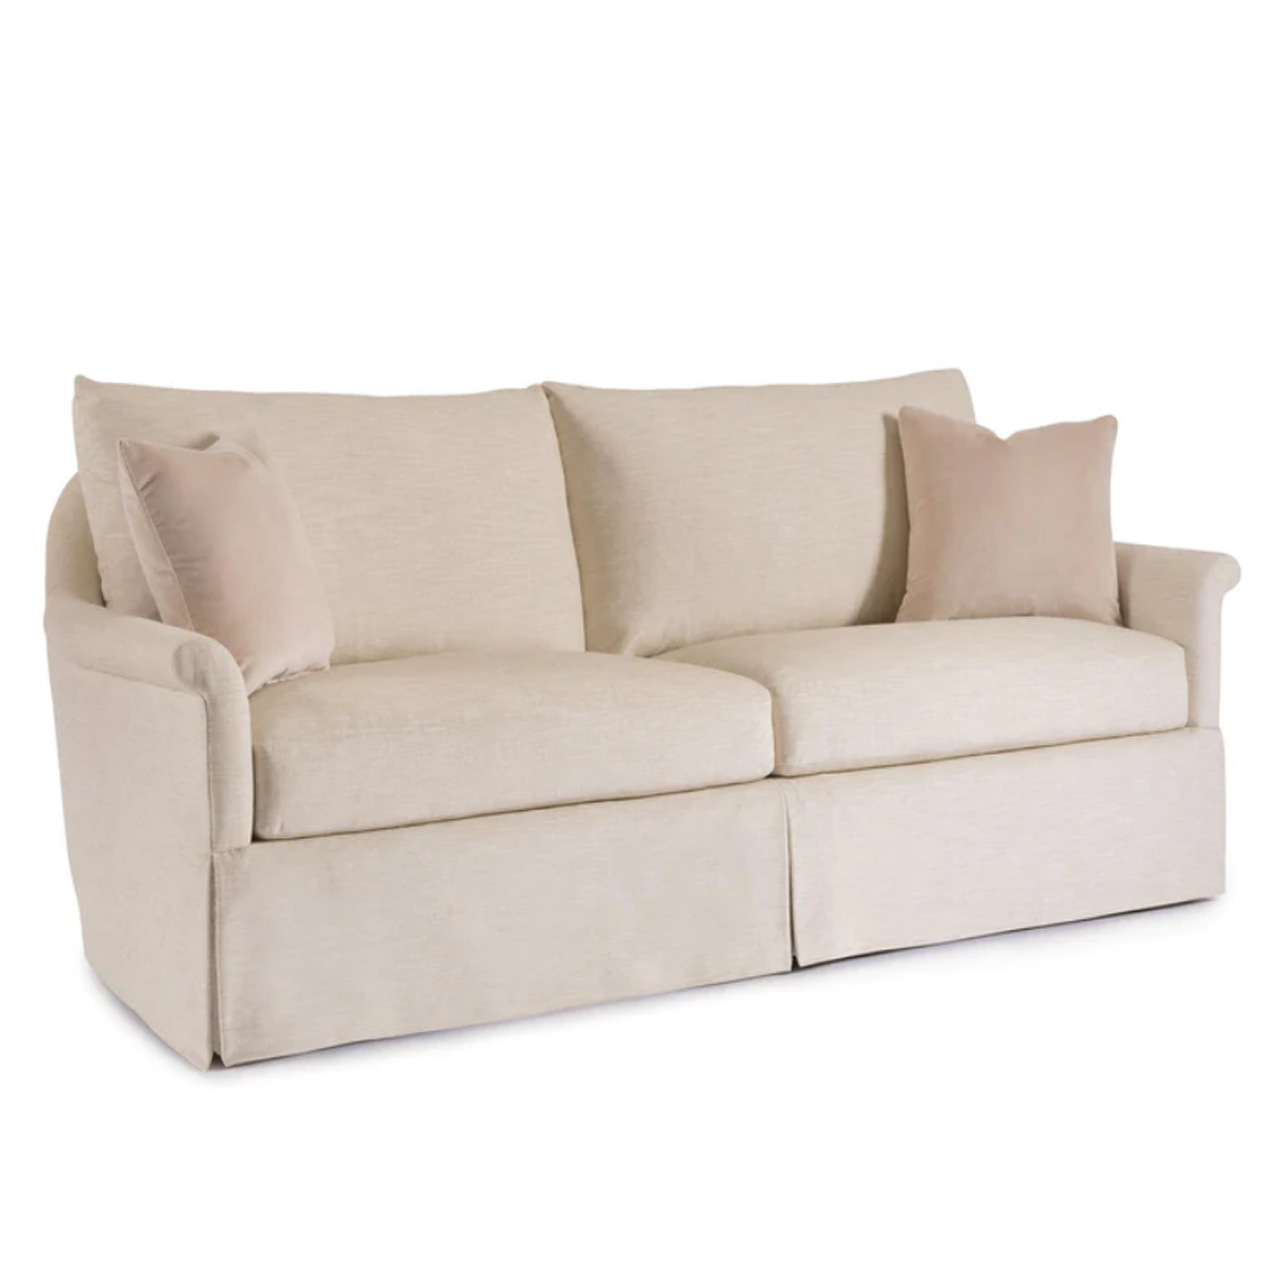 upholstered skirted sofa